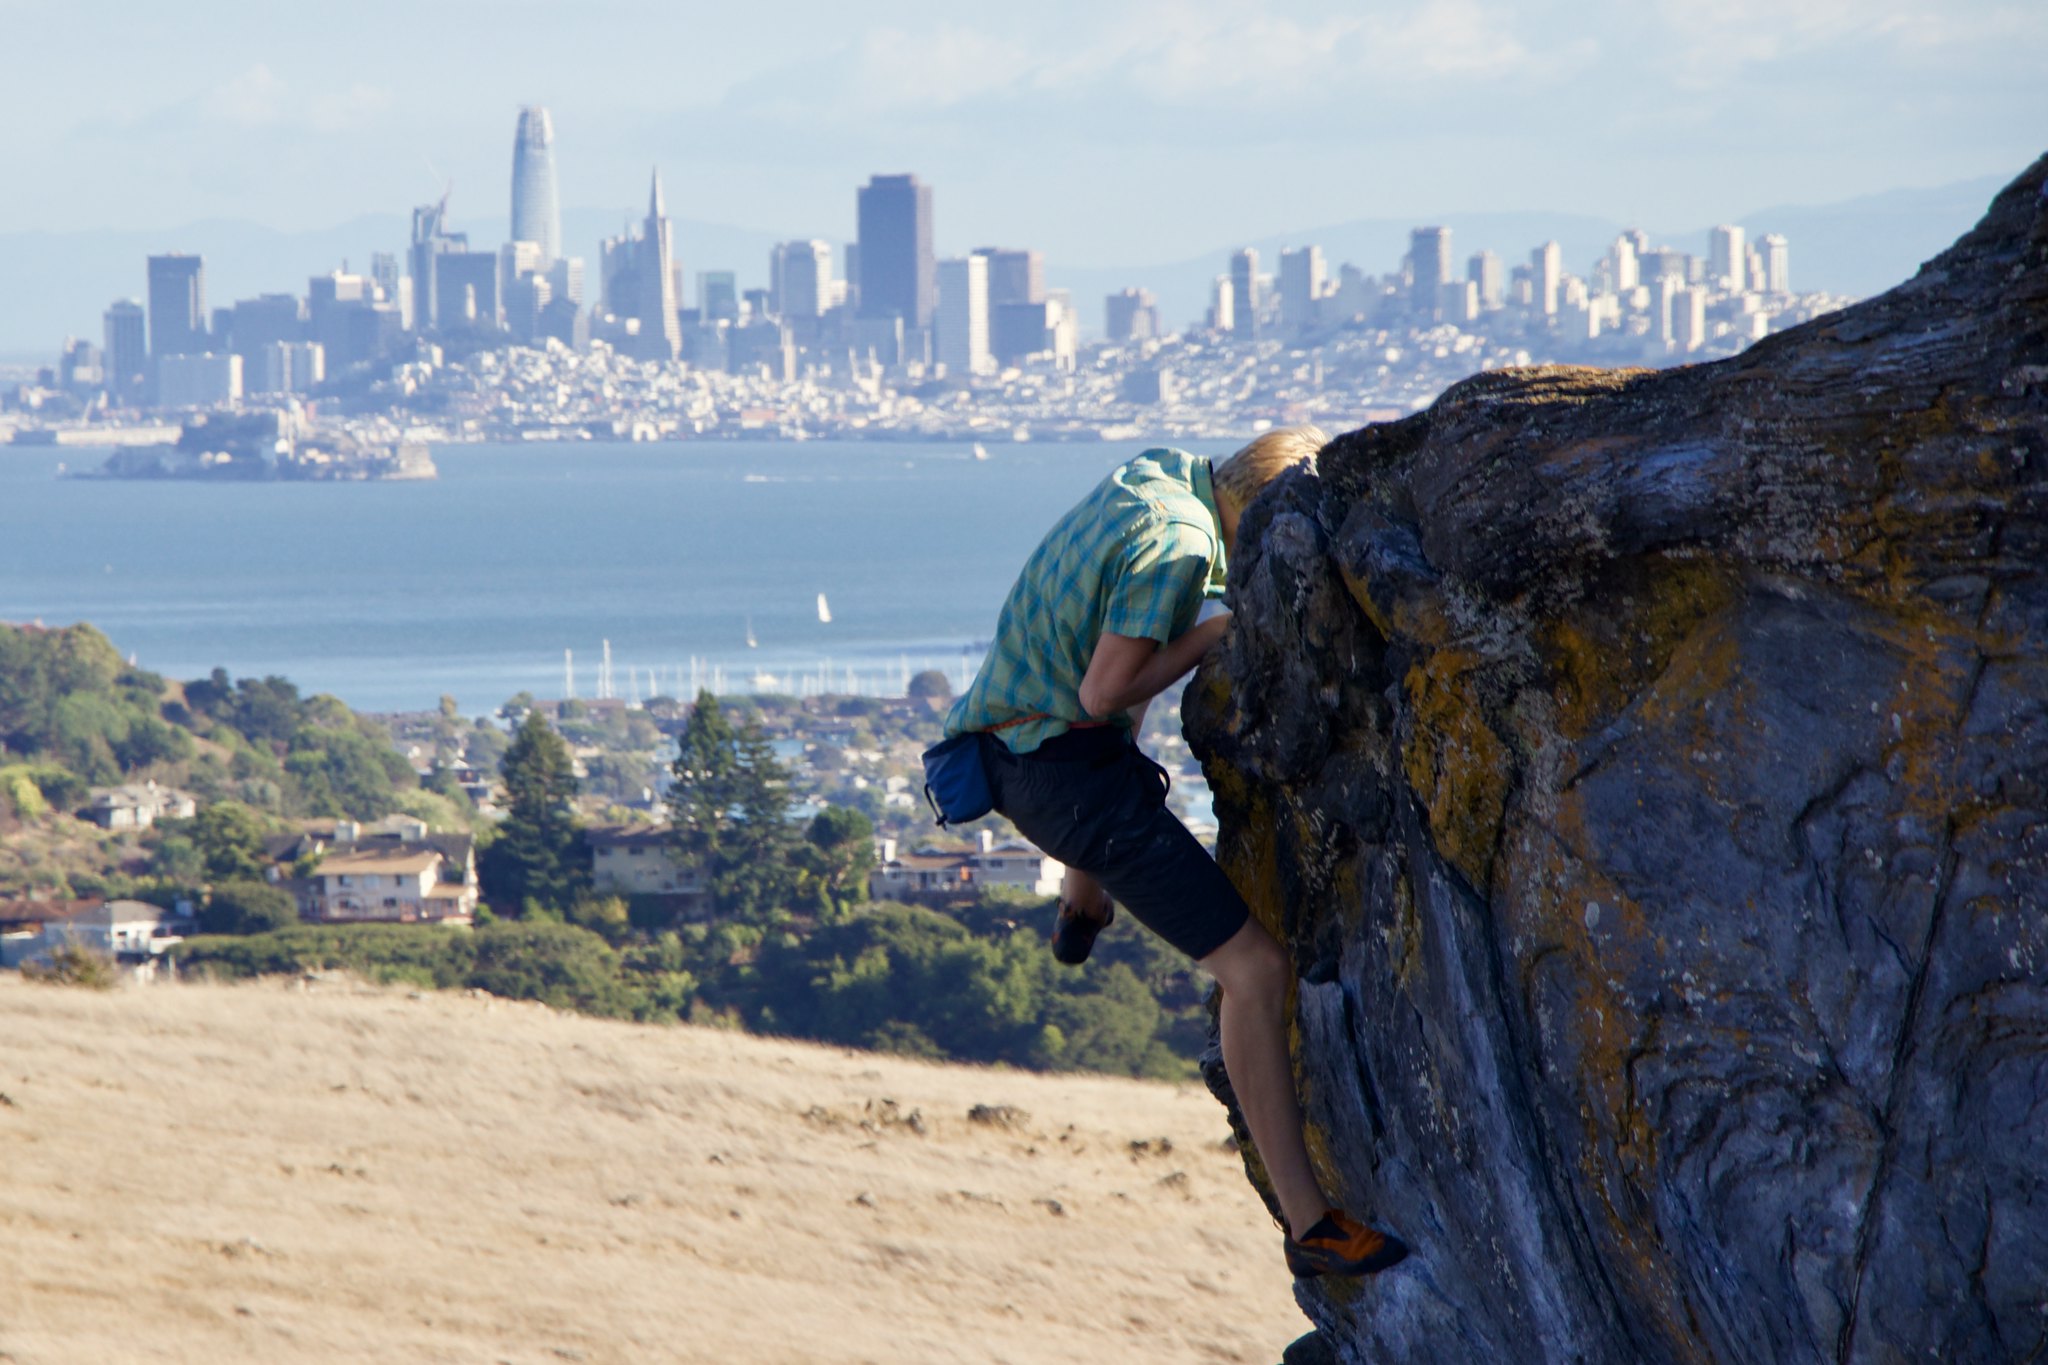 تسلق الصخور في سان فرانسيسكو